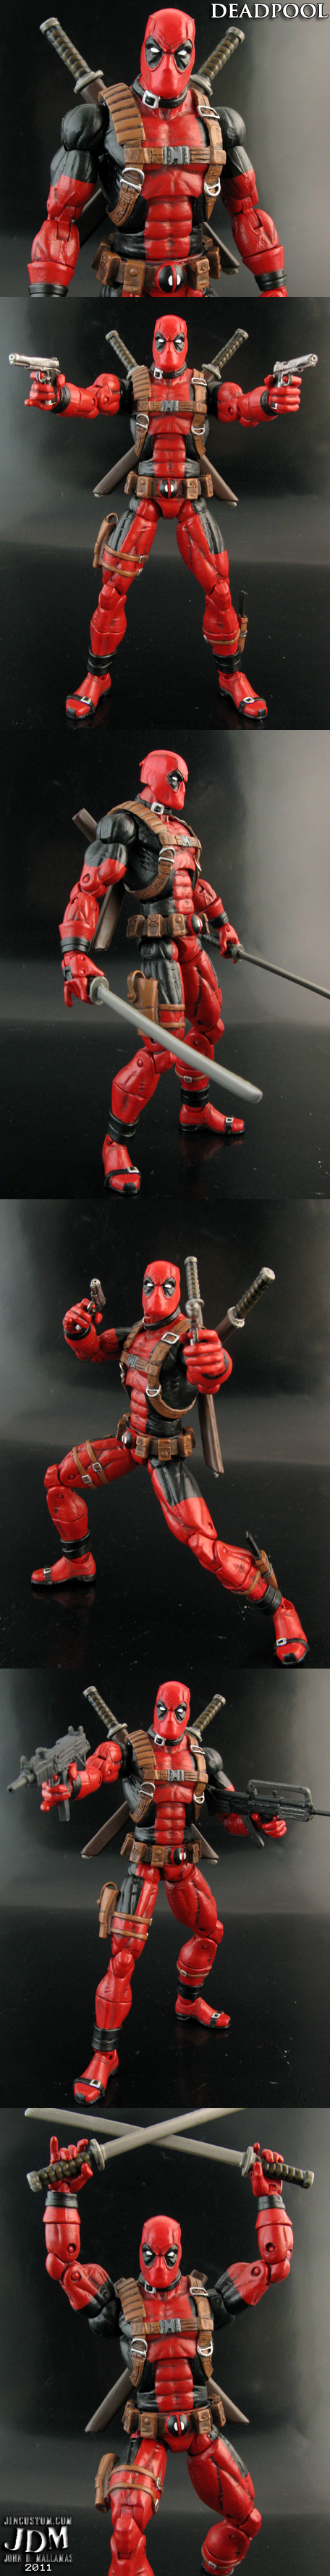 Custom Deadpool figure